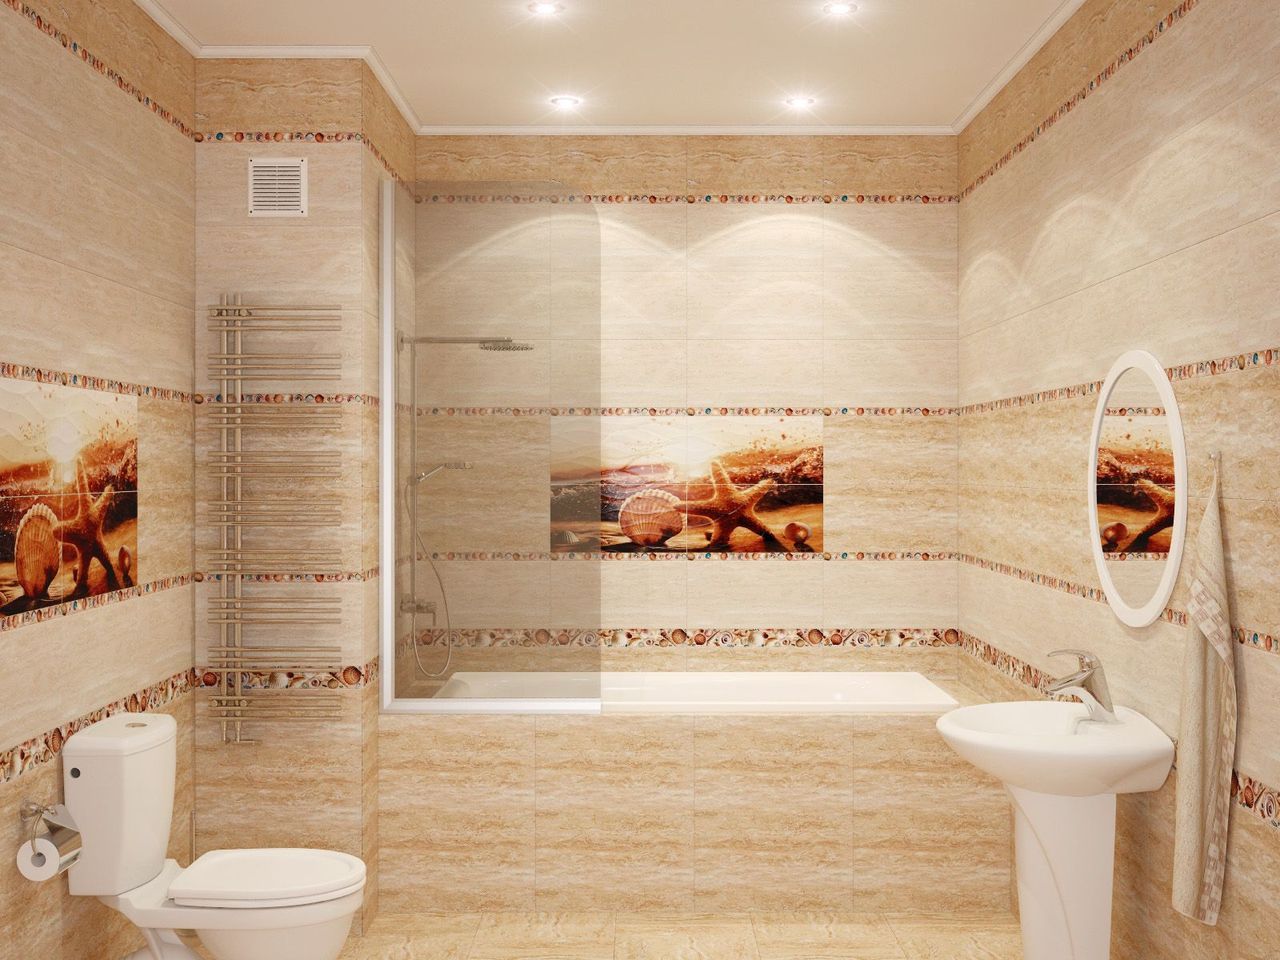 Кафельная плитка с картинами для декора ванной комнаты в стиле песка и пустыни